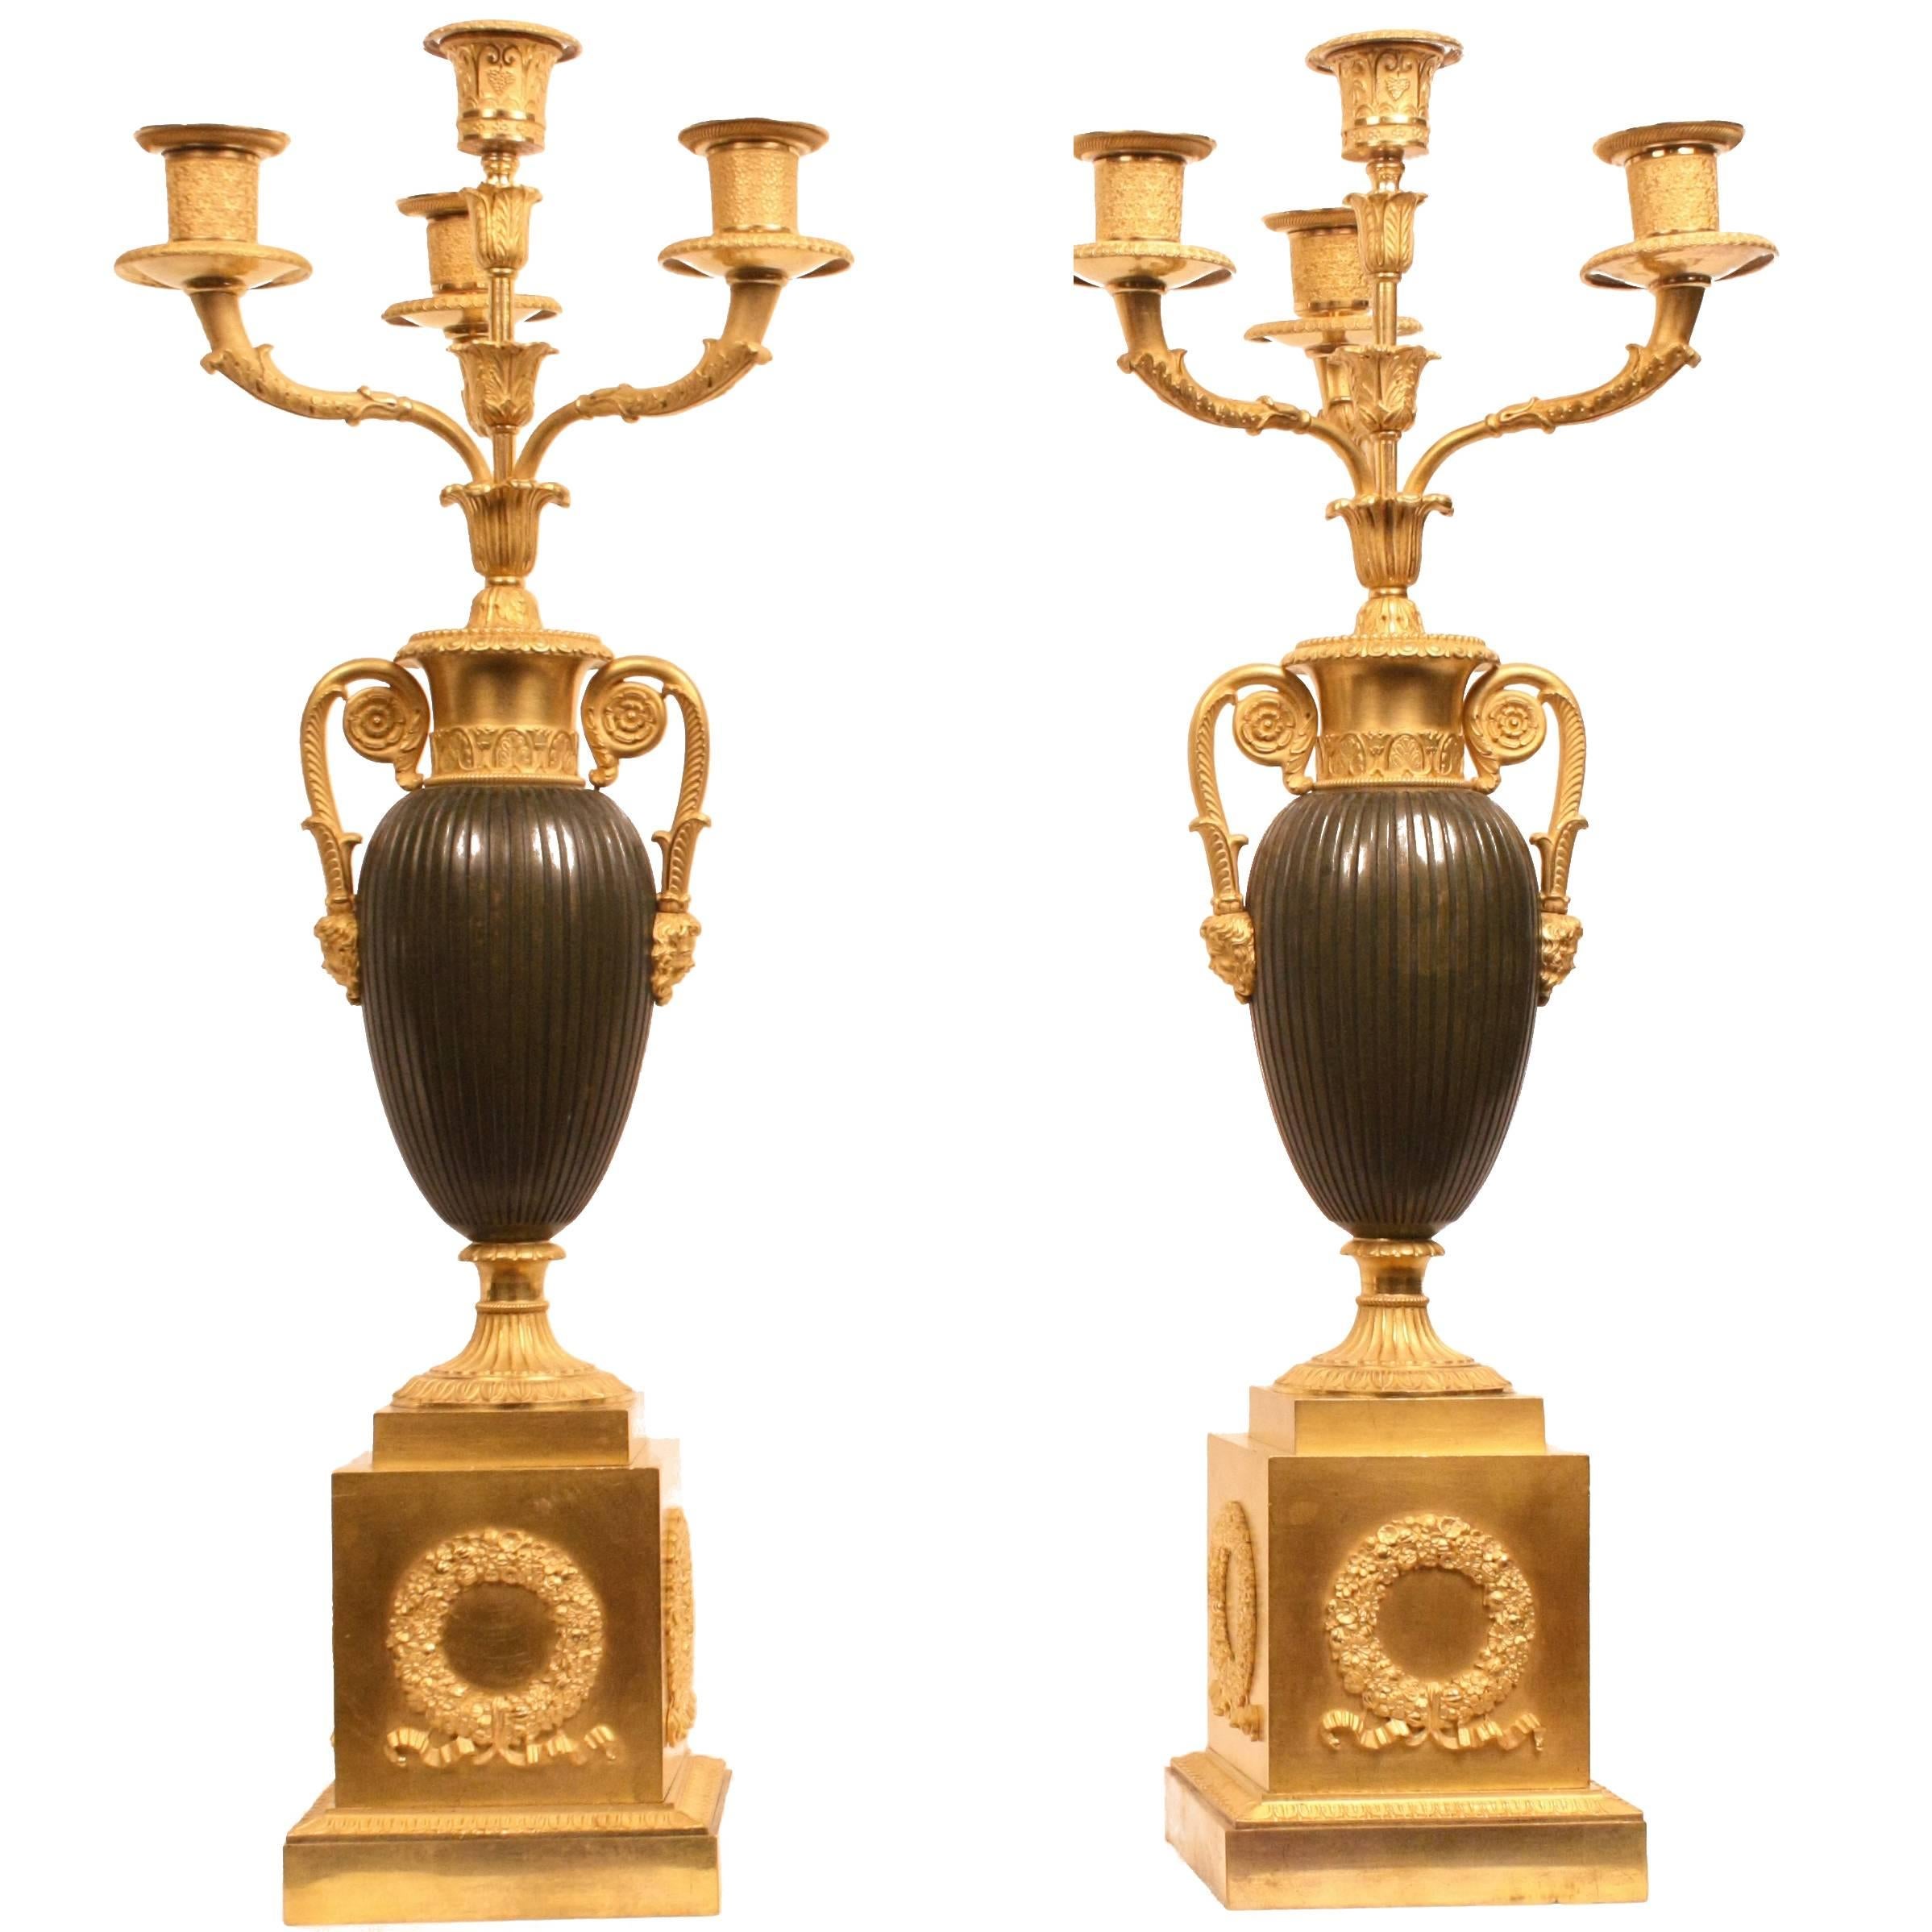 Paar französische Kandelaber aus vergoldeter Bronze aus dem frühen 19. Jahrhundert